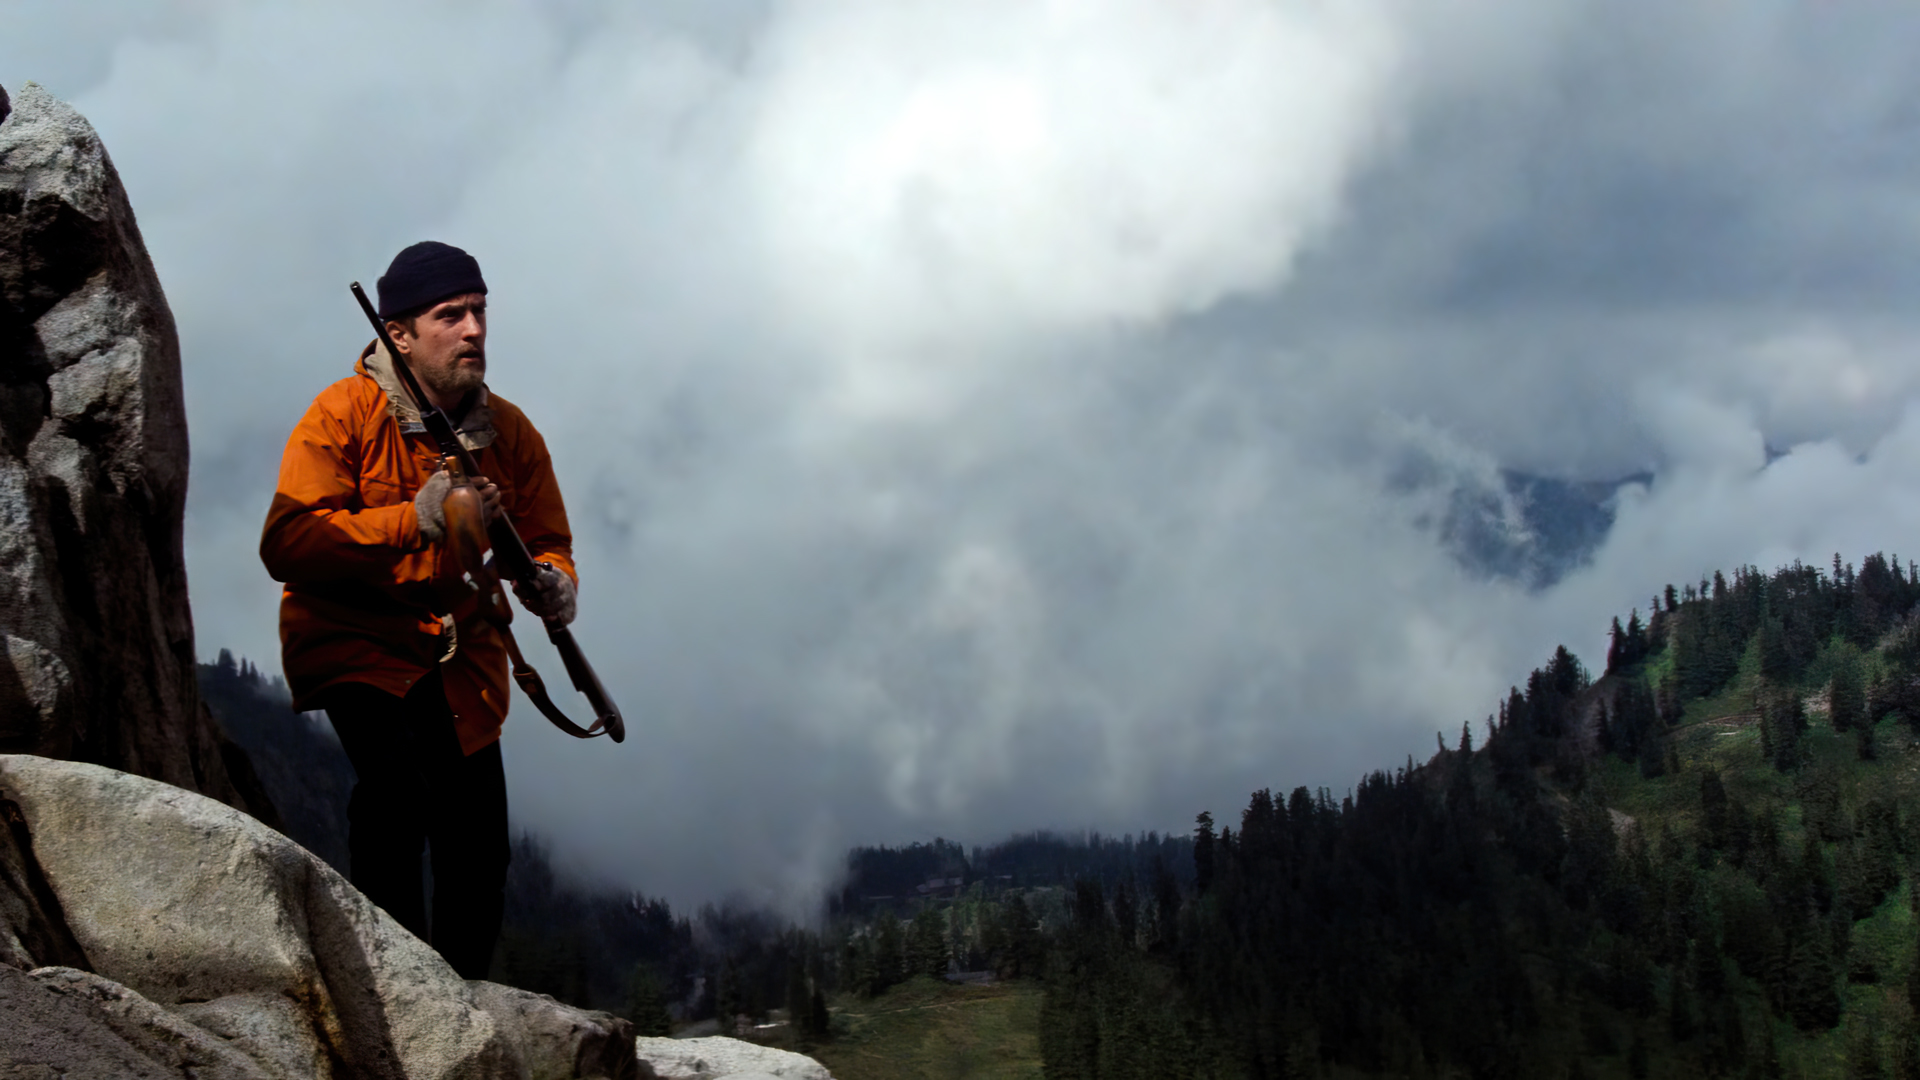 The Deer Hunter Movies Film Stills Robert De Niro Actor Rifles Mountains Forest Trees Clouds Martin  1920x1080